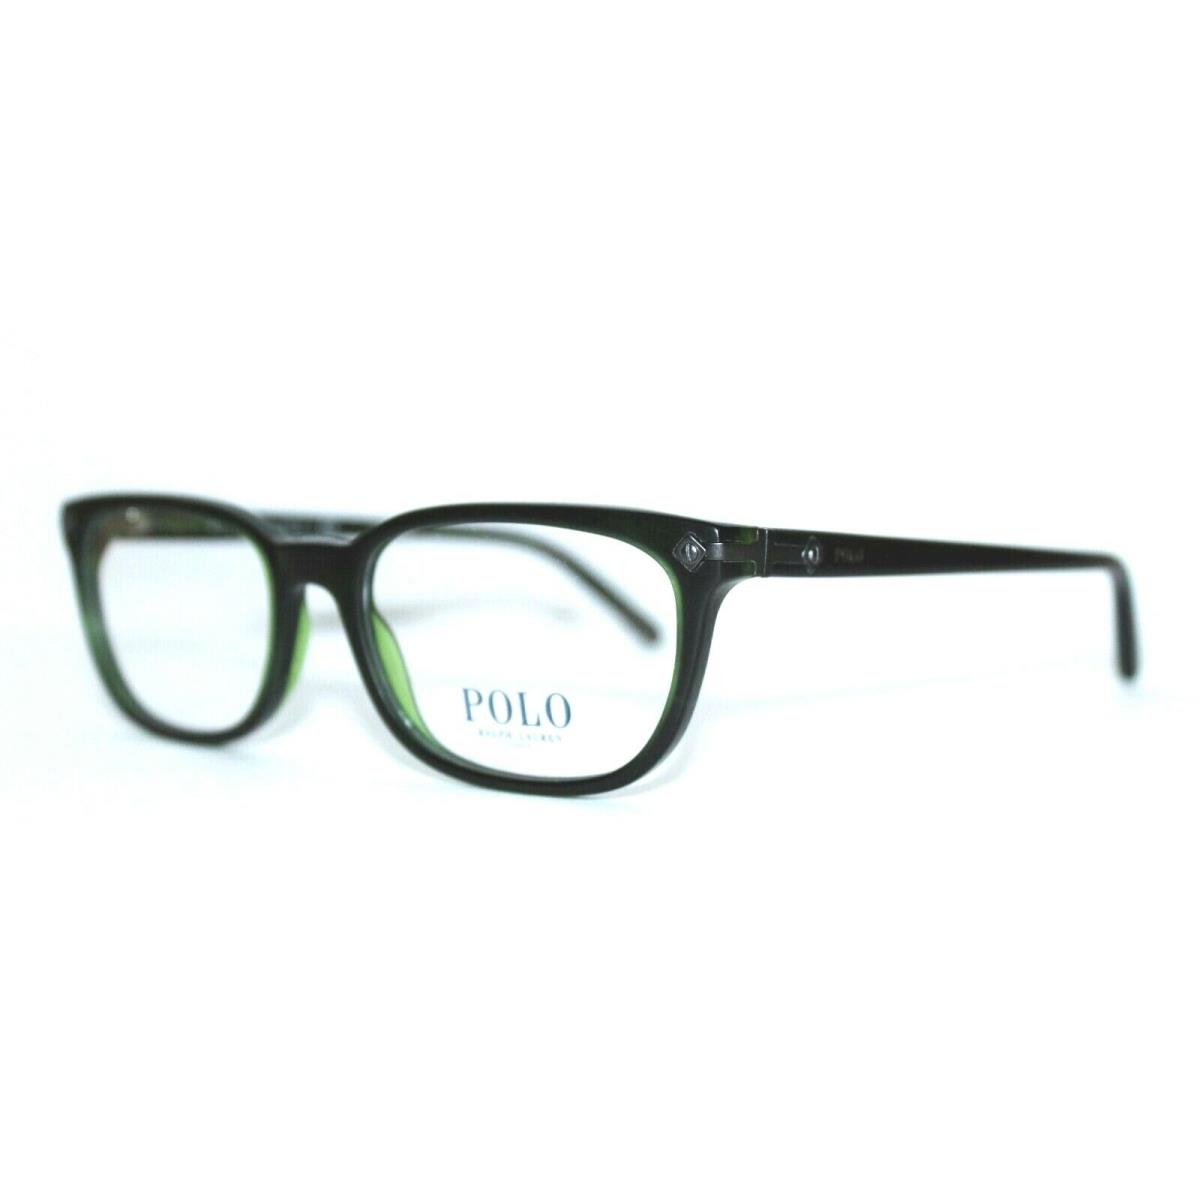 Ralph Lauren eyeglasses  - Green , Green Frame 0